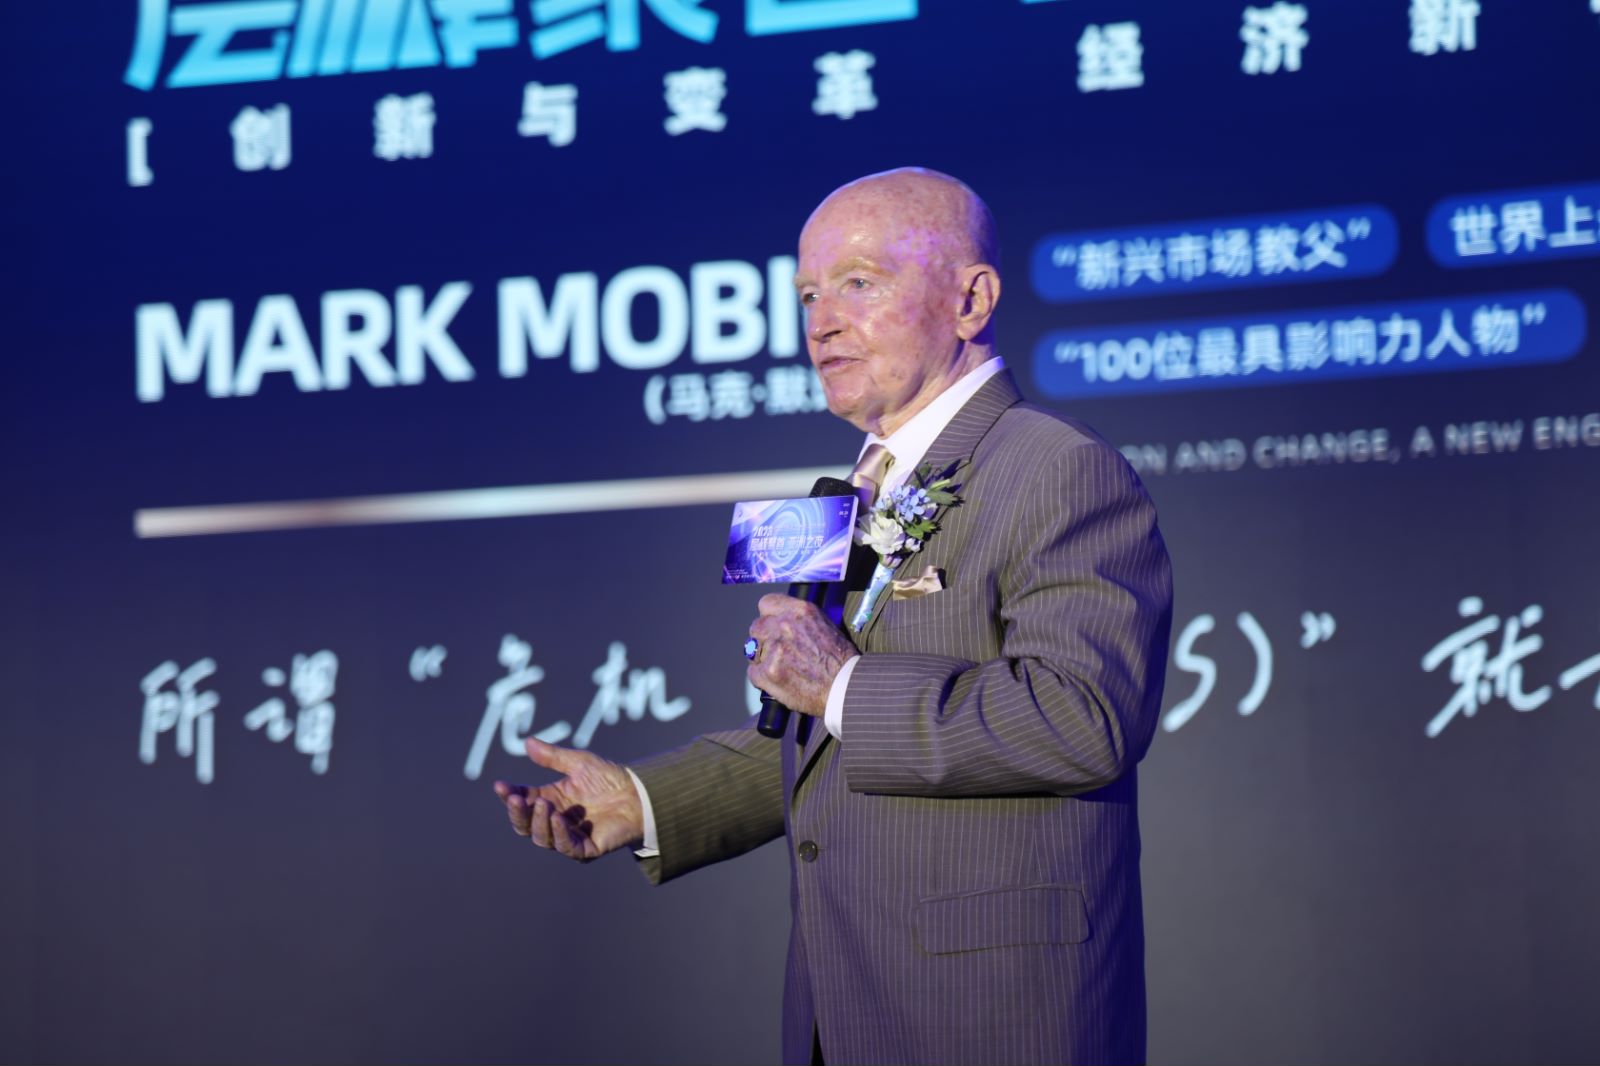 世界知名投资大师——马克·墨比尔斯 出席 #深圳2023层峰聚首·亚洲之夜#活动